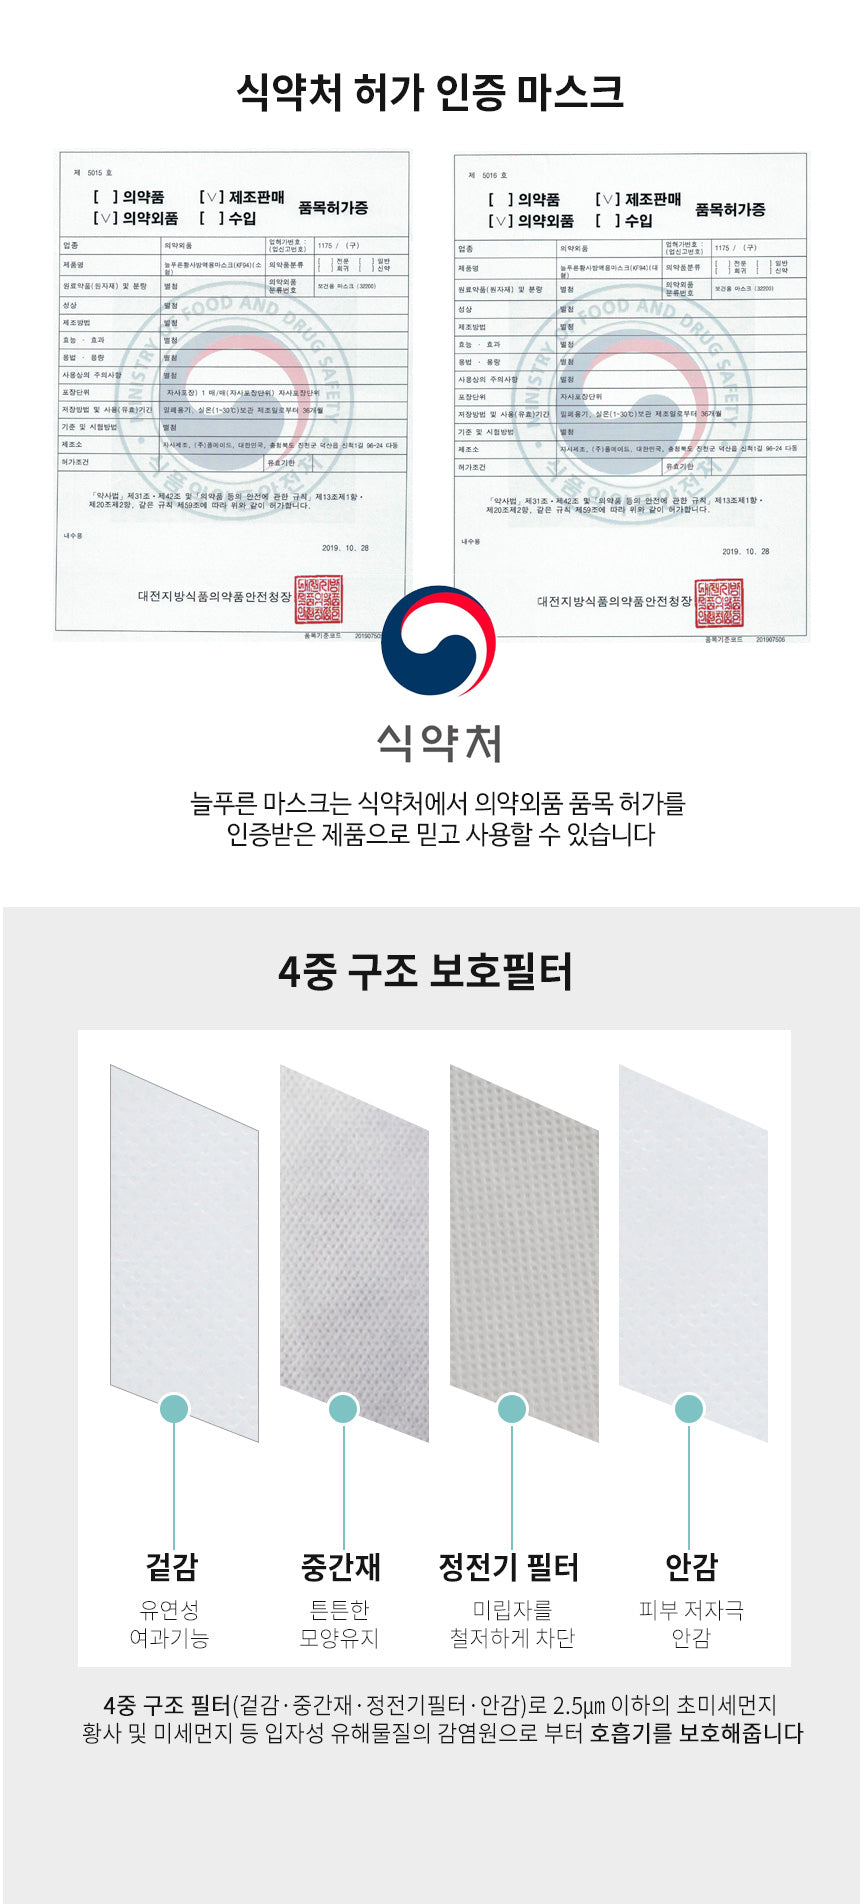 韓國Neulpuleun KF94 四層立體口罩 黑色 (50個獨立包裝)